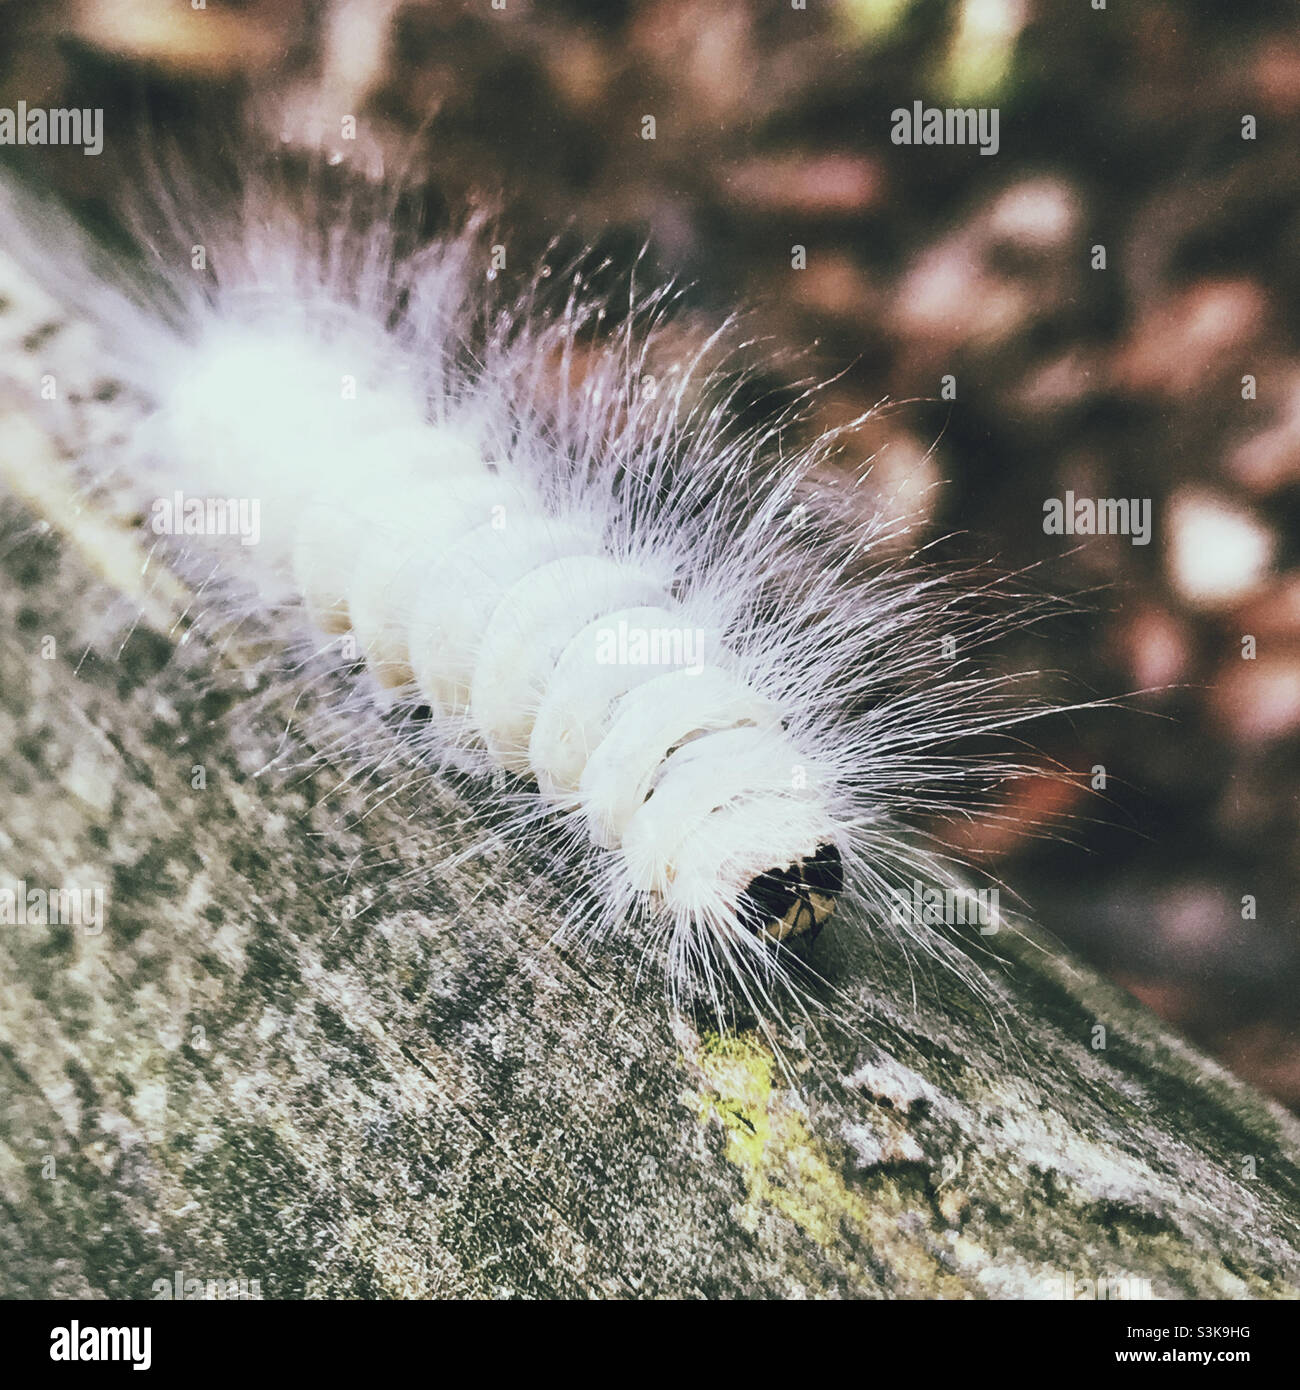 Eine verschwommene weiße Raupe auf einer Holzbank. Es wird die Laugher Moth Raupe genannt. Stockfoto